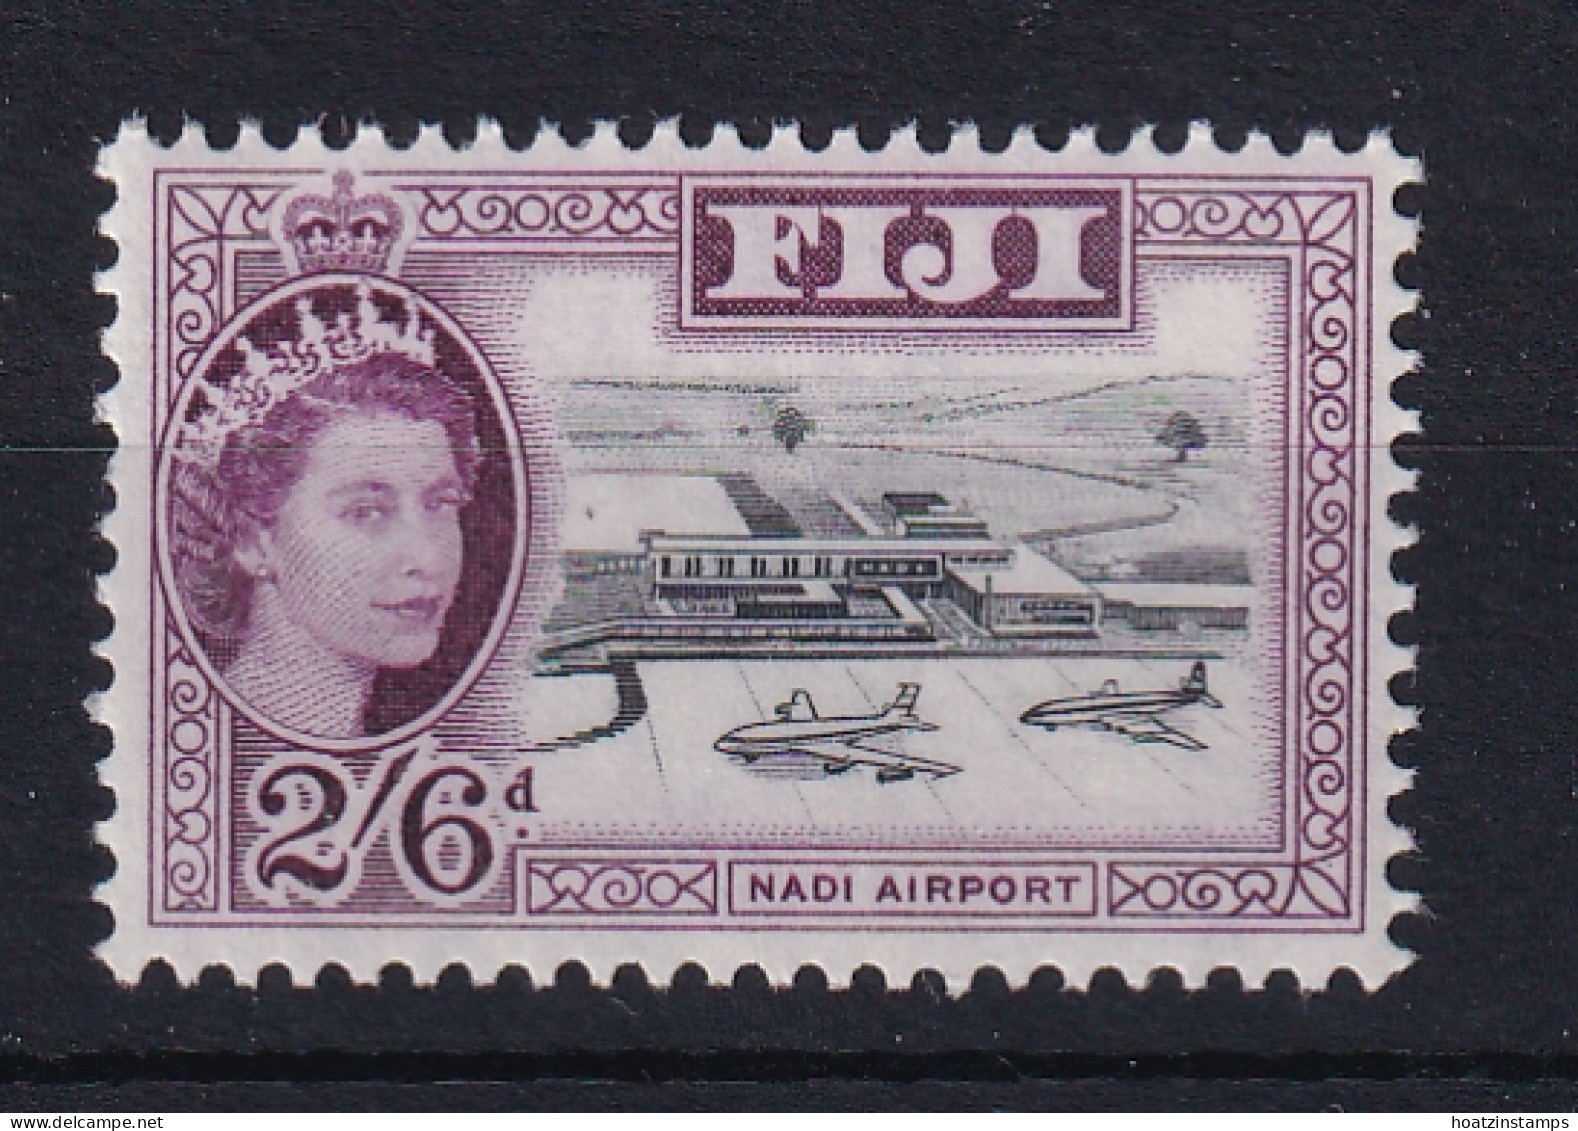 Fiji: 1962/67   QE II - Pictorial    SG320    2/6d   Black & Purple    MNH - Fiji (...-1970)